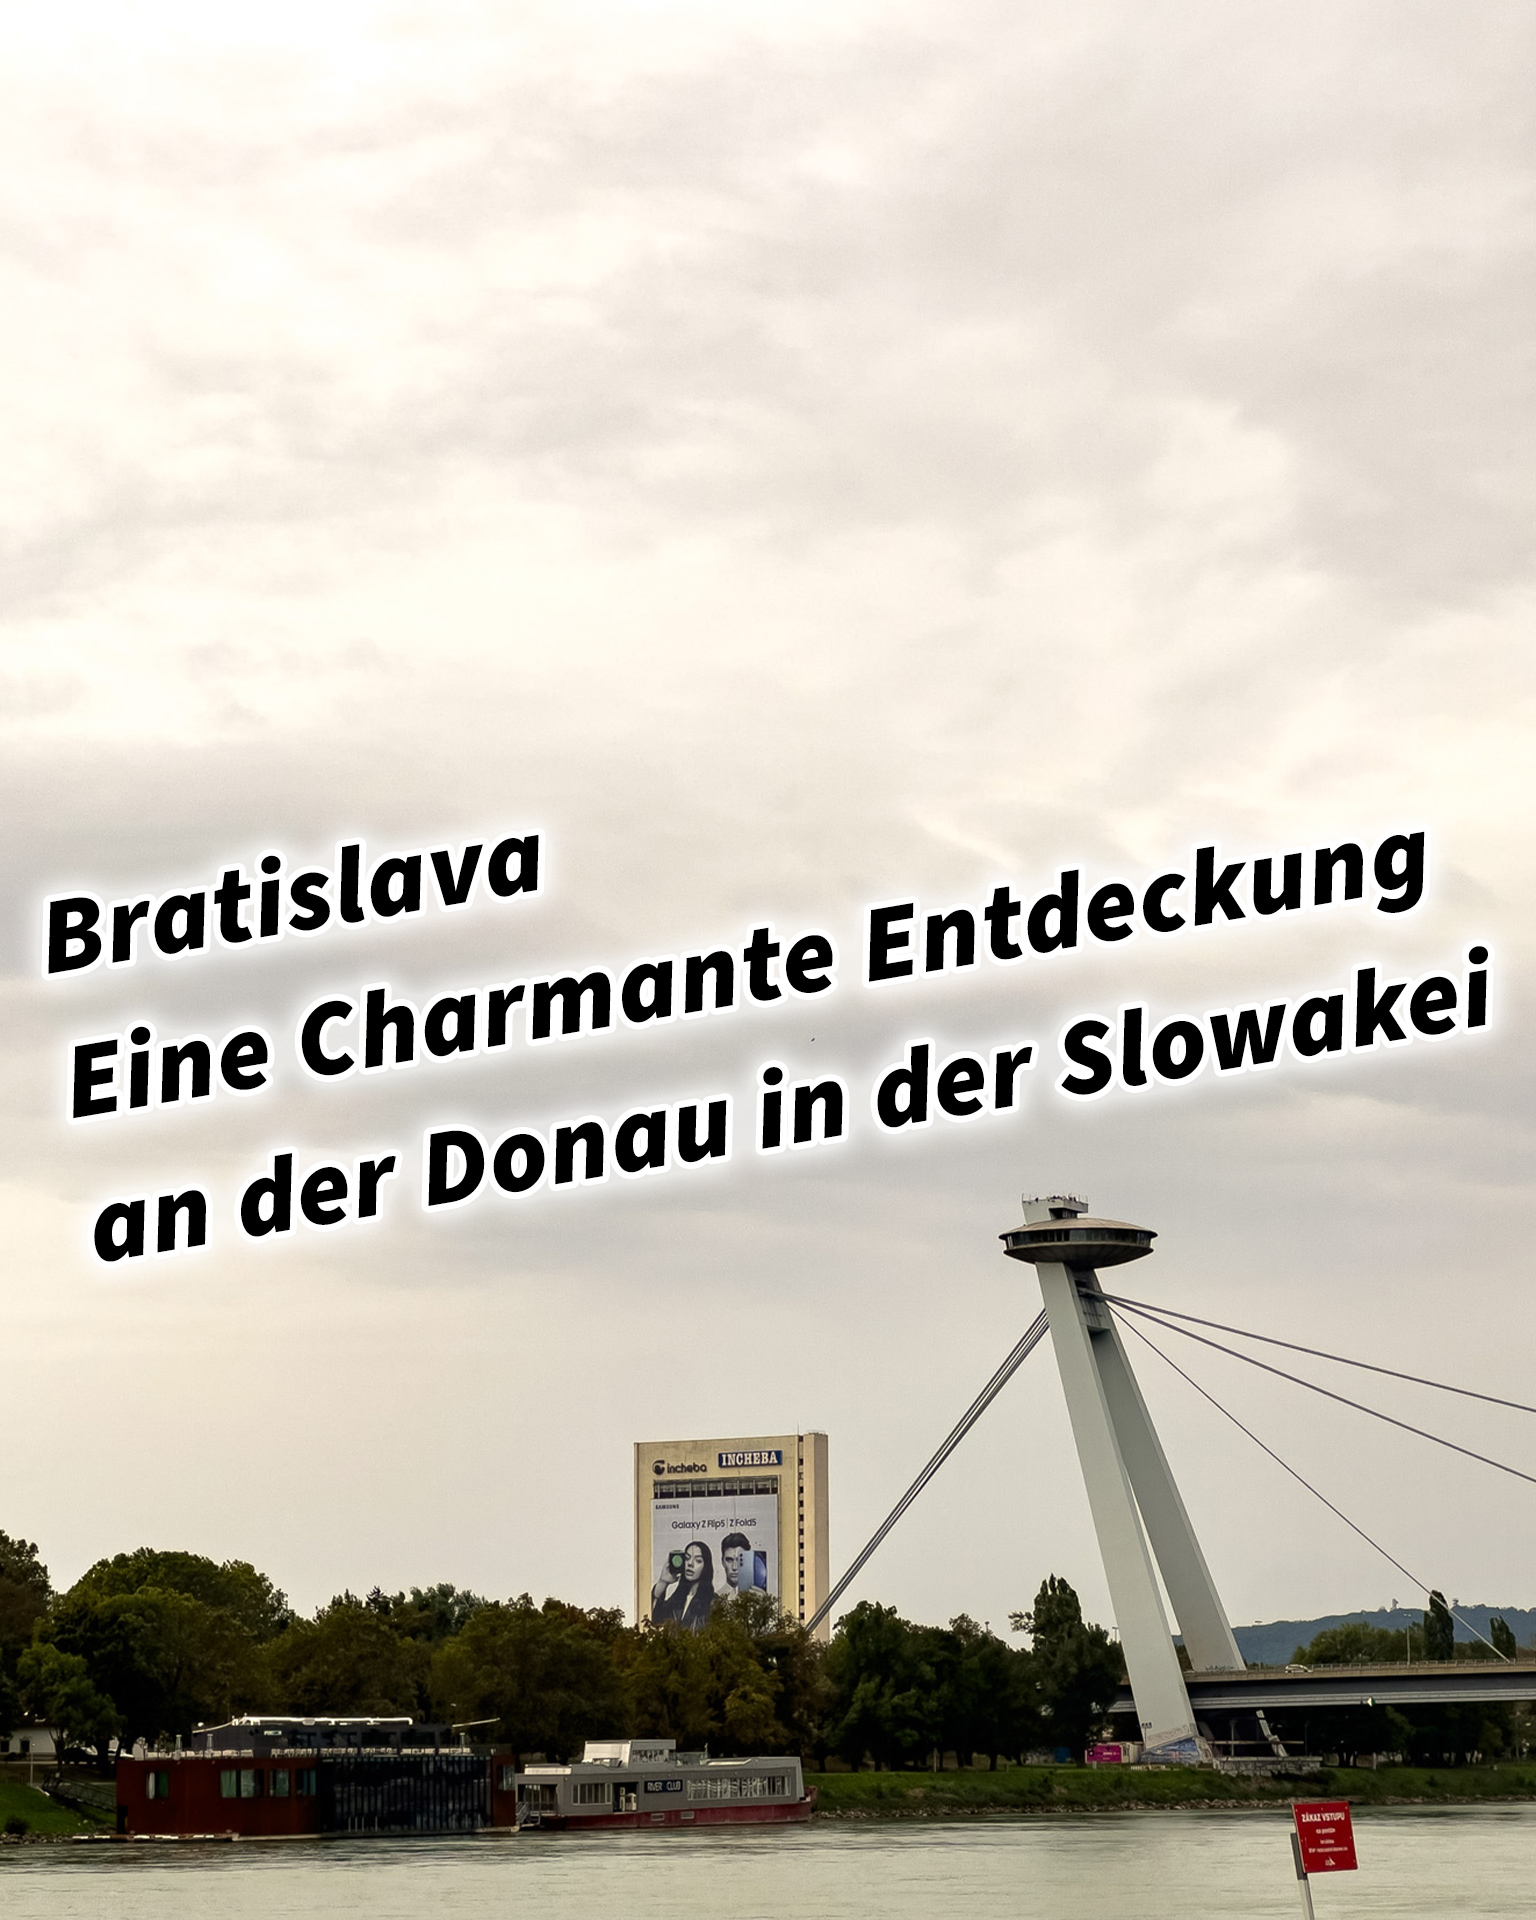 Bratislava - Eine Charmante Entdeckung an der Donau in der Slowakei